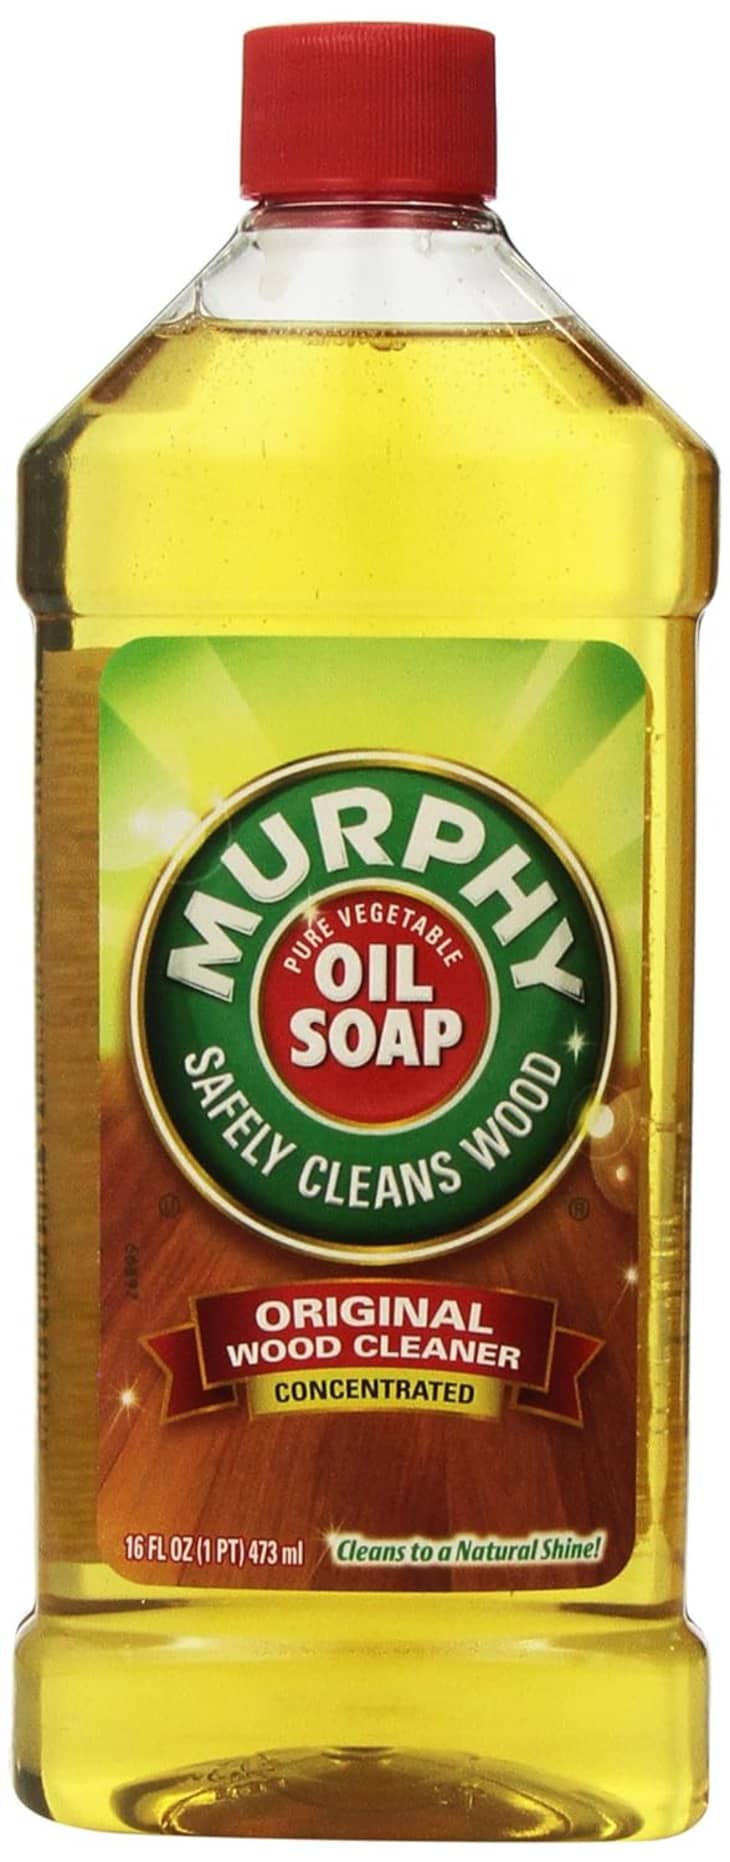 Murphy Oil Soap at Amazon